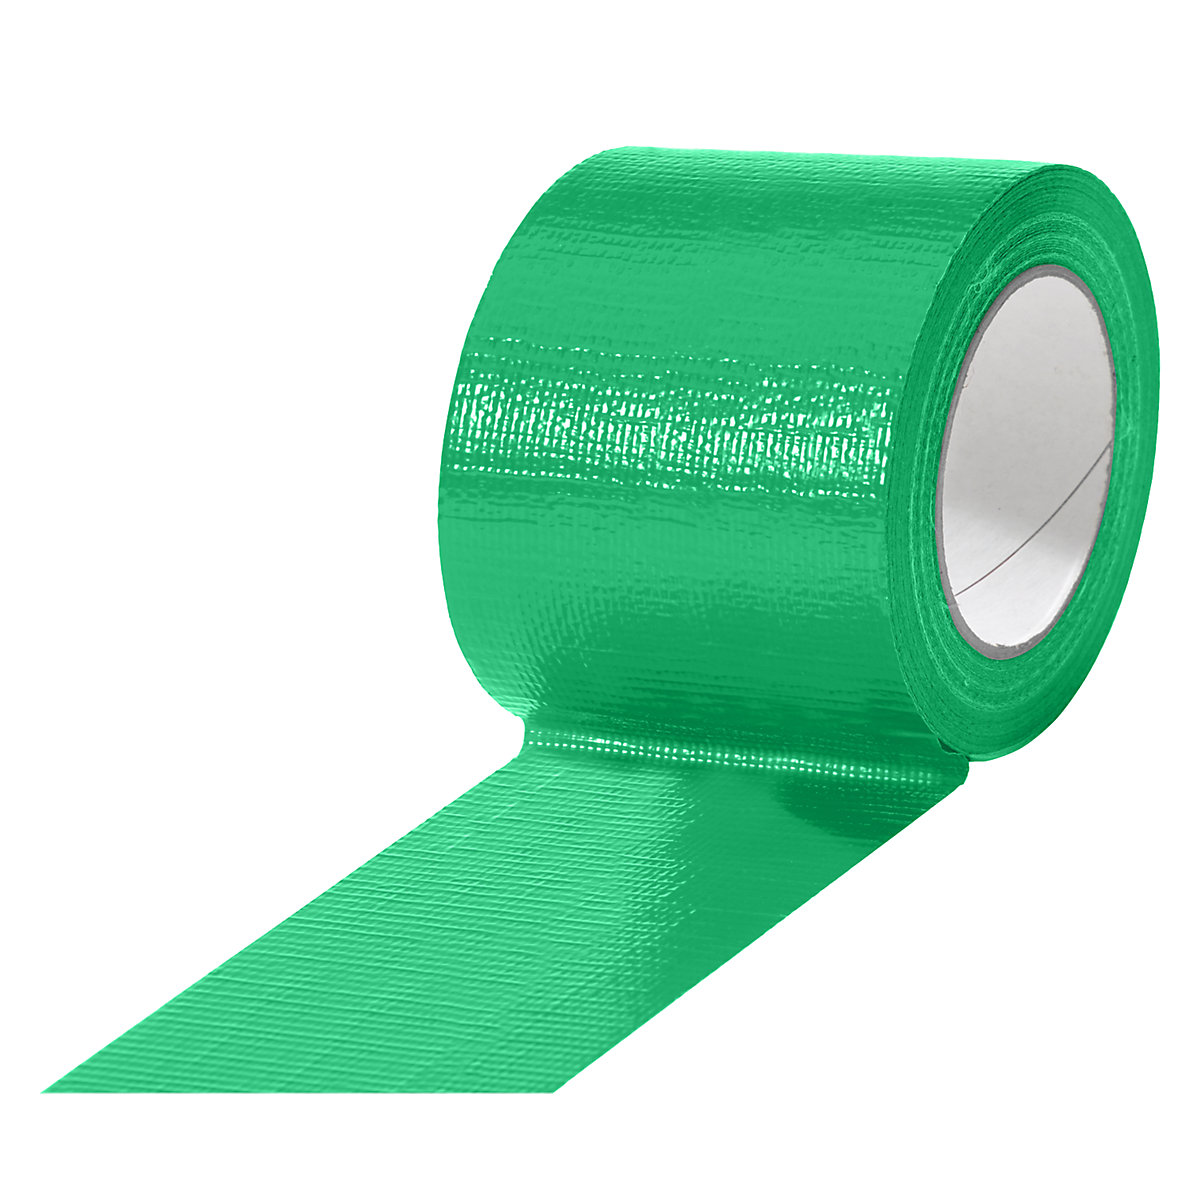 Gewebeband, in verschiedenen Farben, VE 12 Rollen, grün, Bandbreite 75 mm